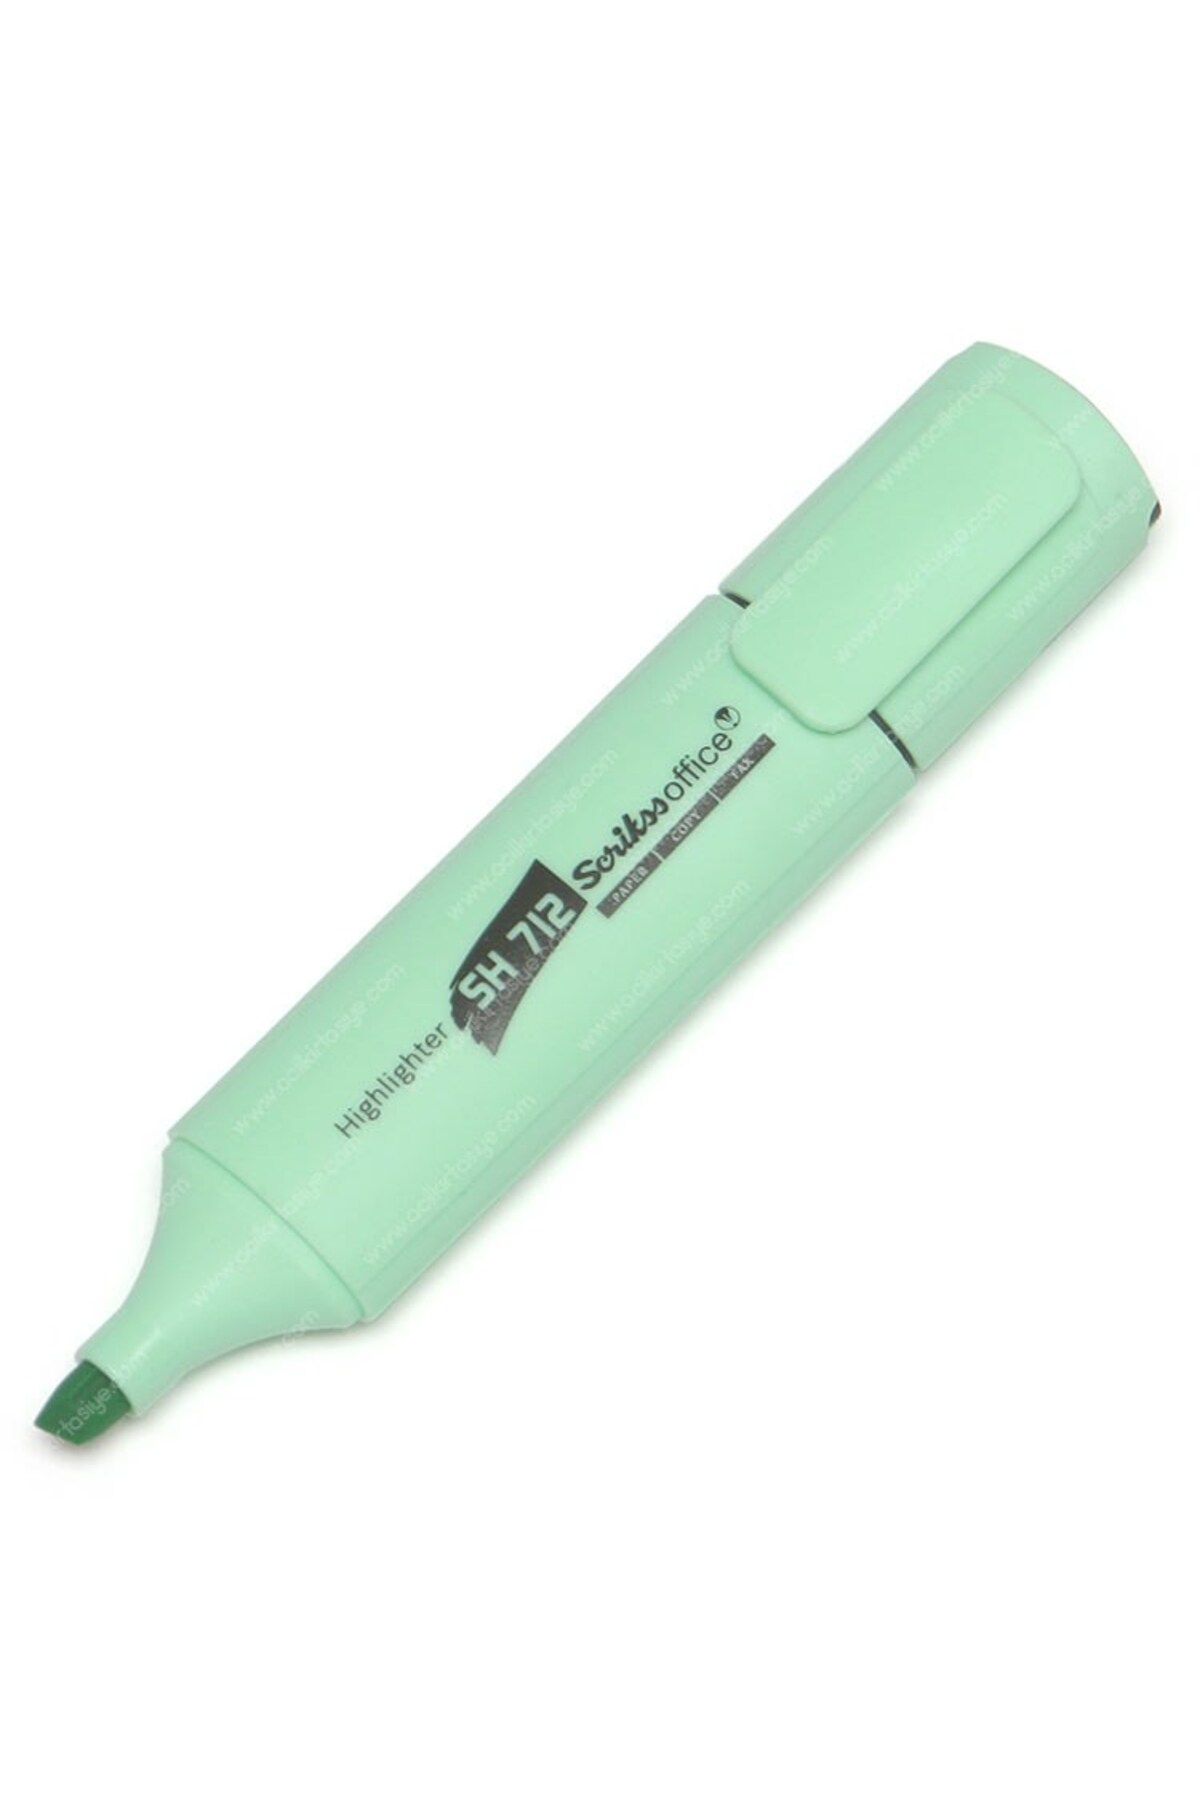 Scrikss Sh-712 Fosforlu Kalem Tüm Renkler Pastel Yeşil